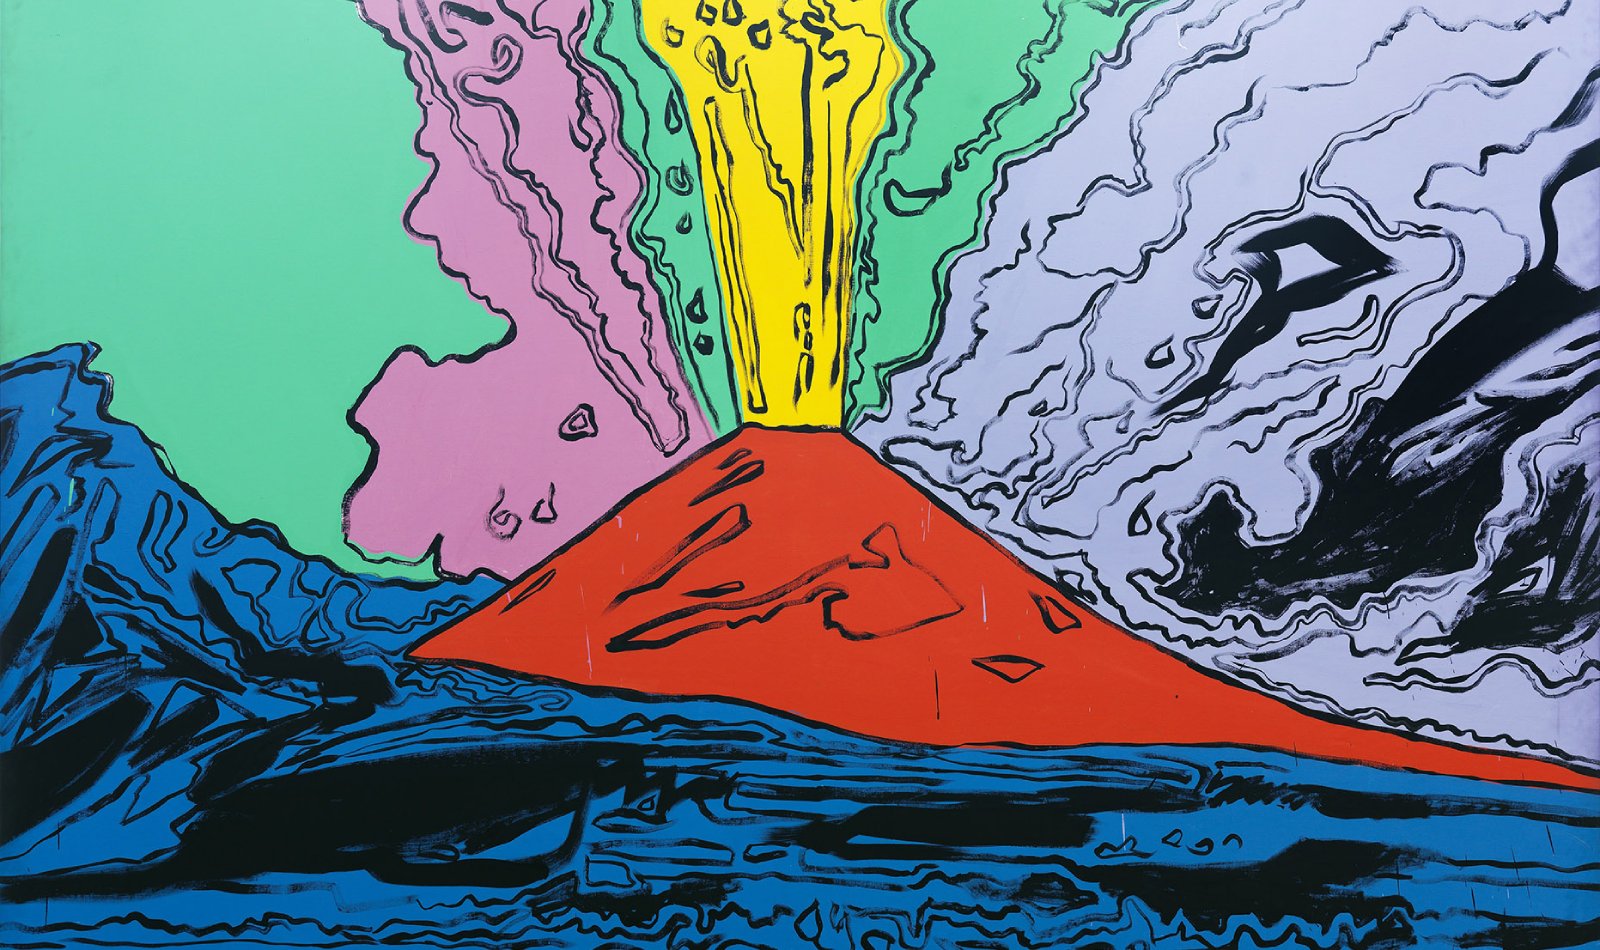 Andy Warhol Vesuv, der Vulkan Vesuv